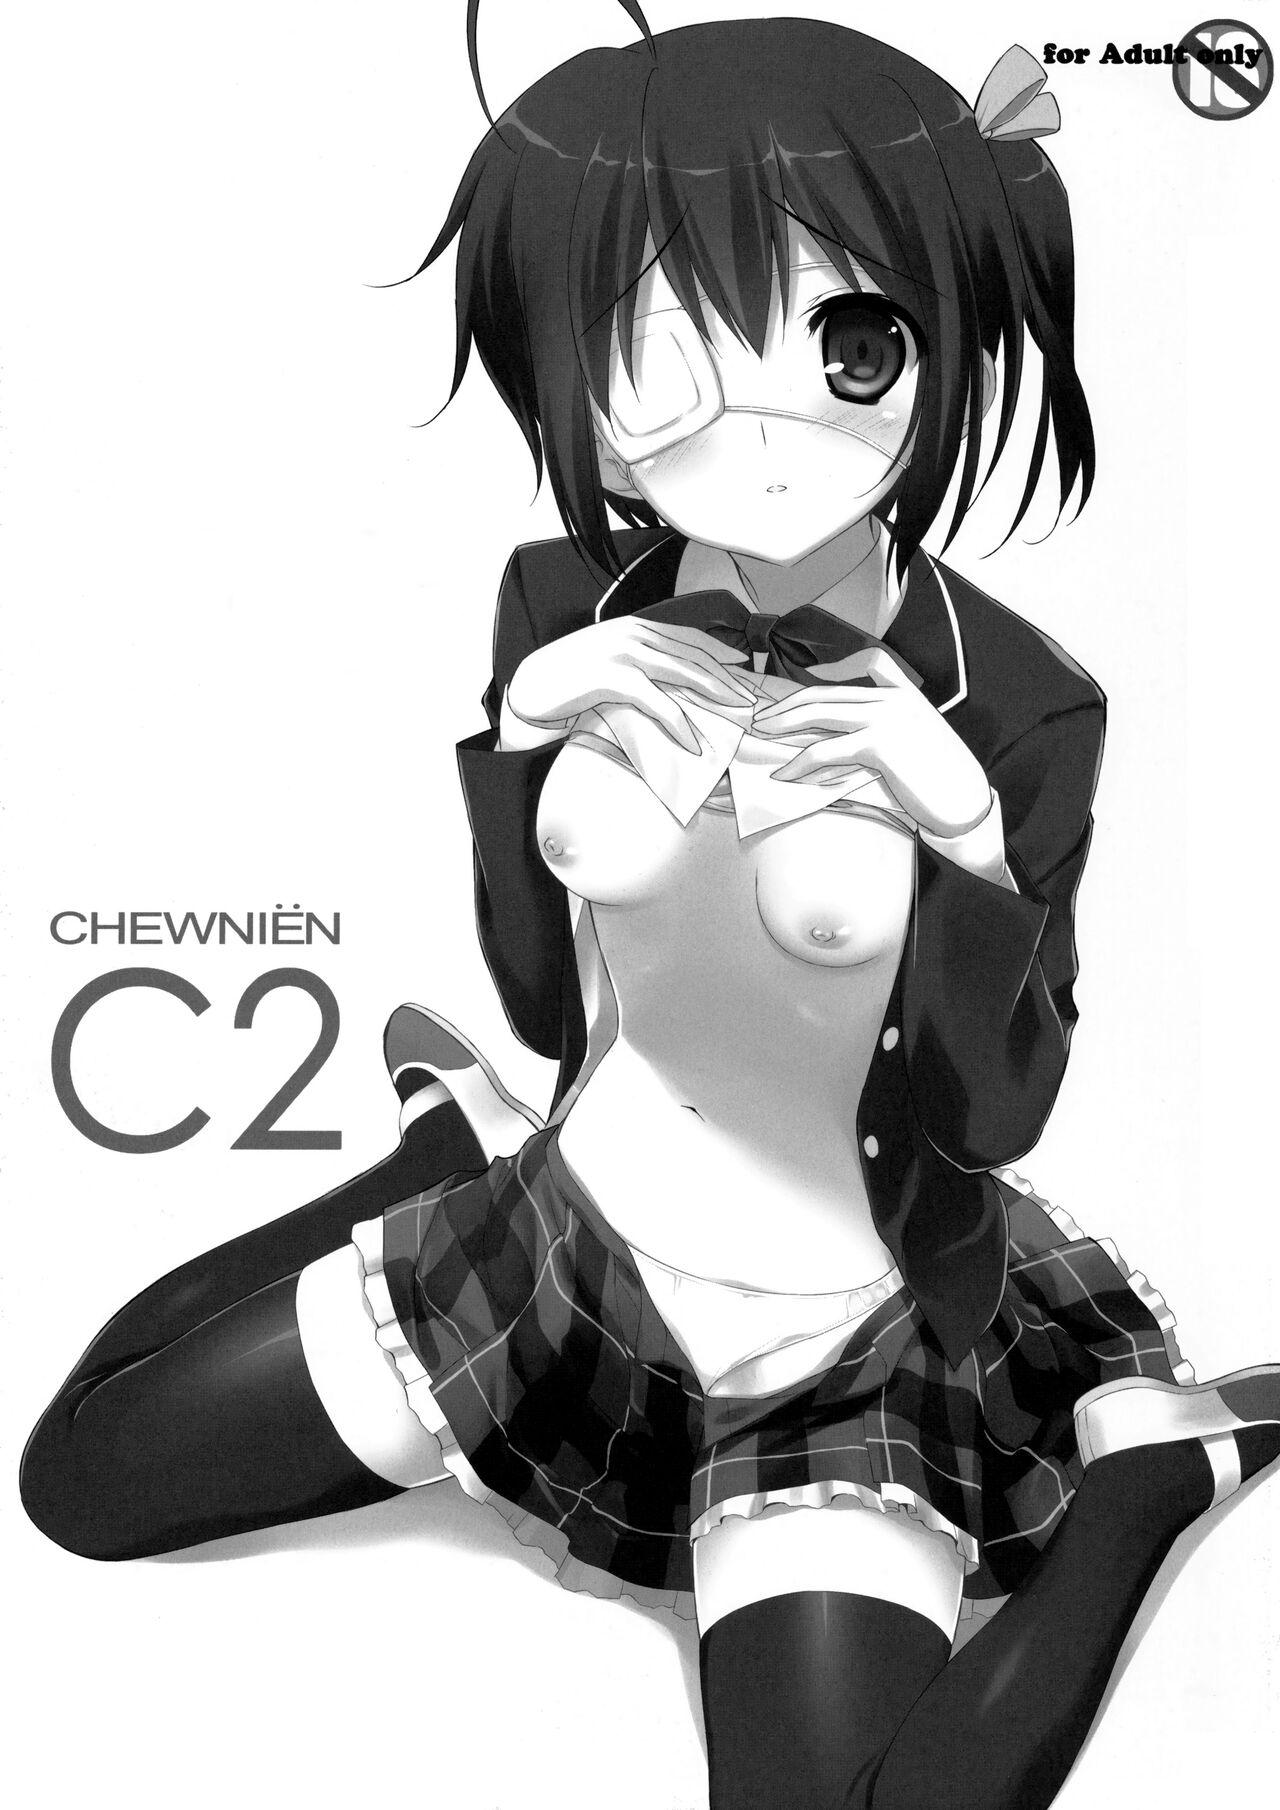 Big Booty CHEWNIEN C2 - Chuunibyou demo koi ga shitai Adolescente - Picture 2